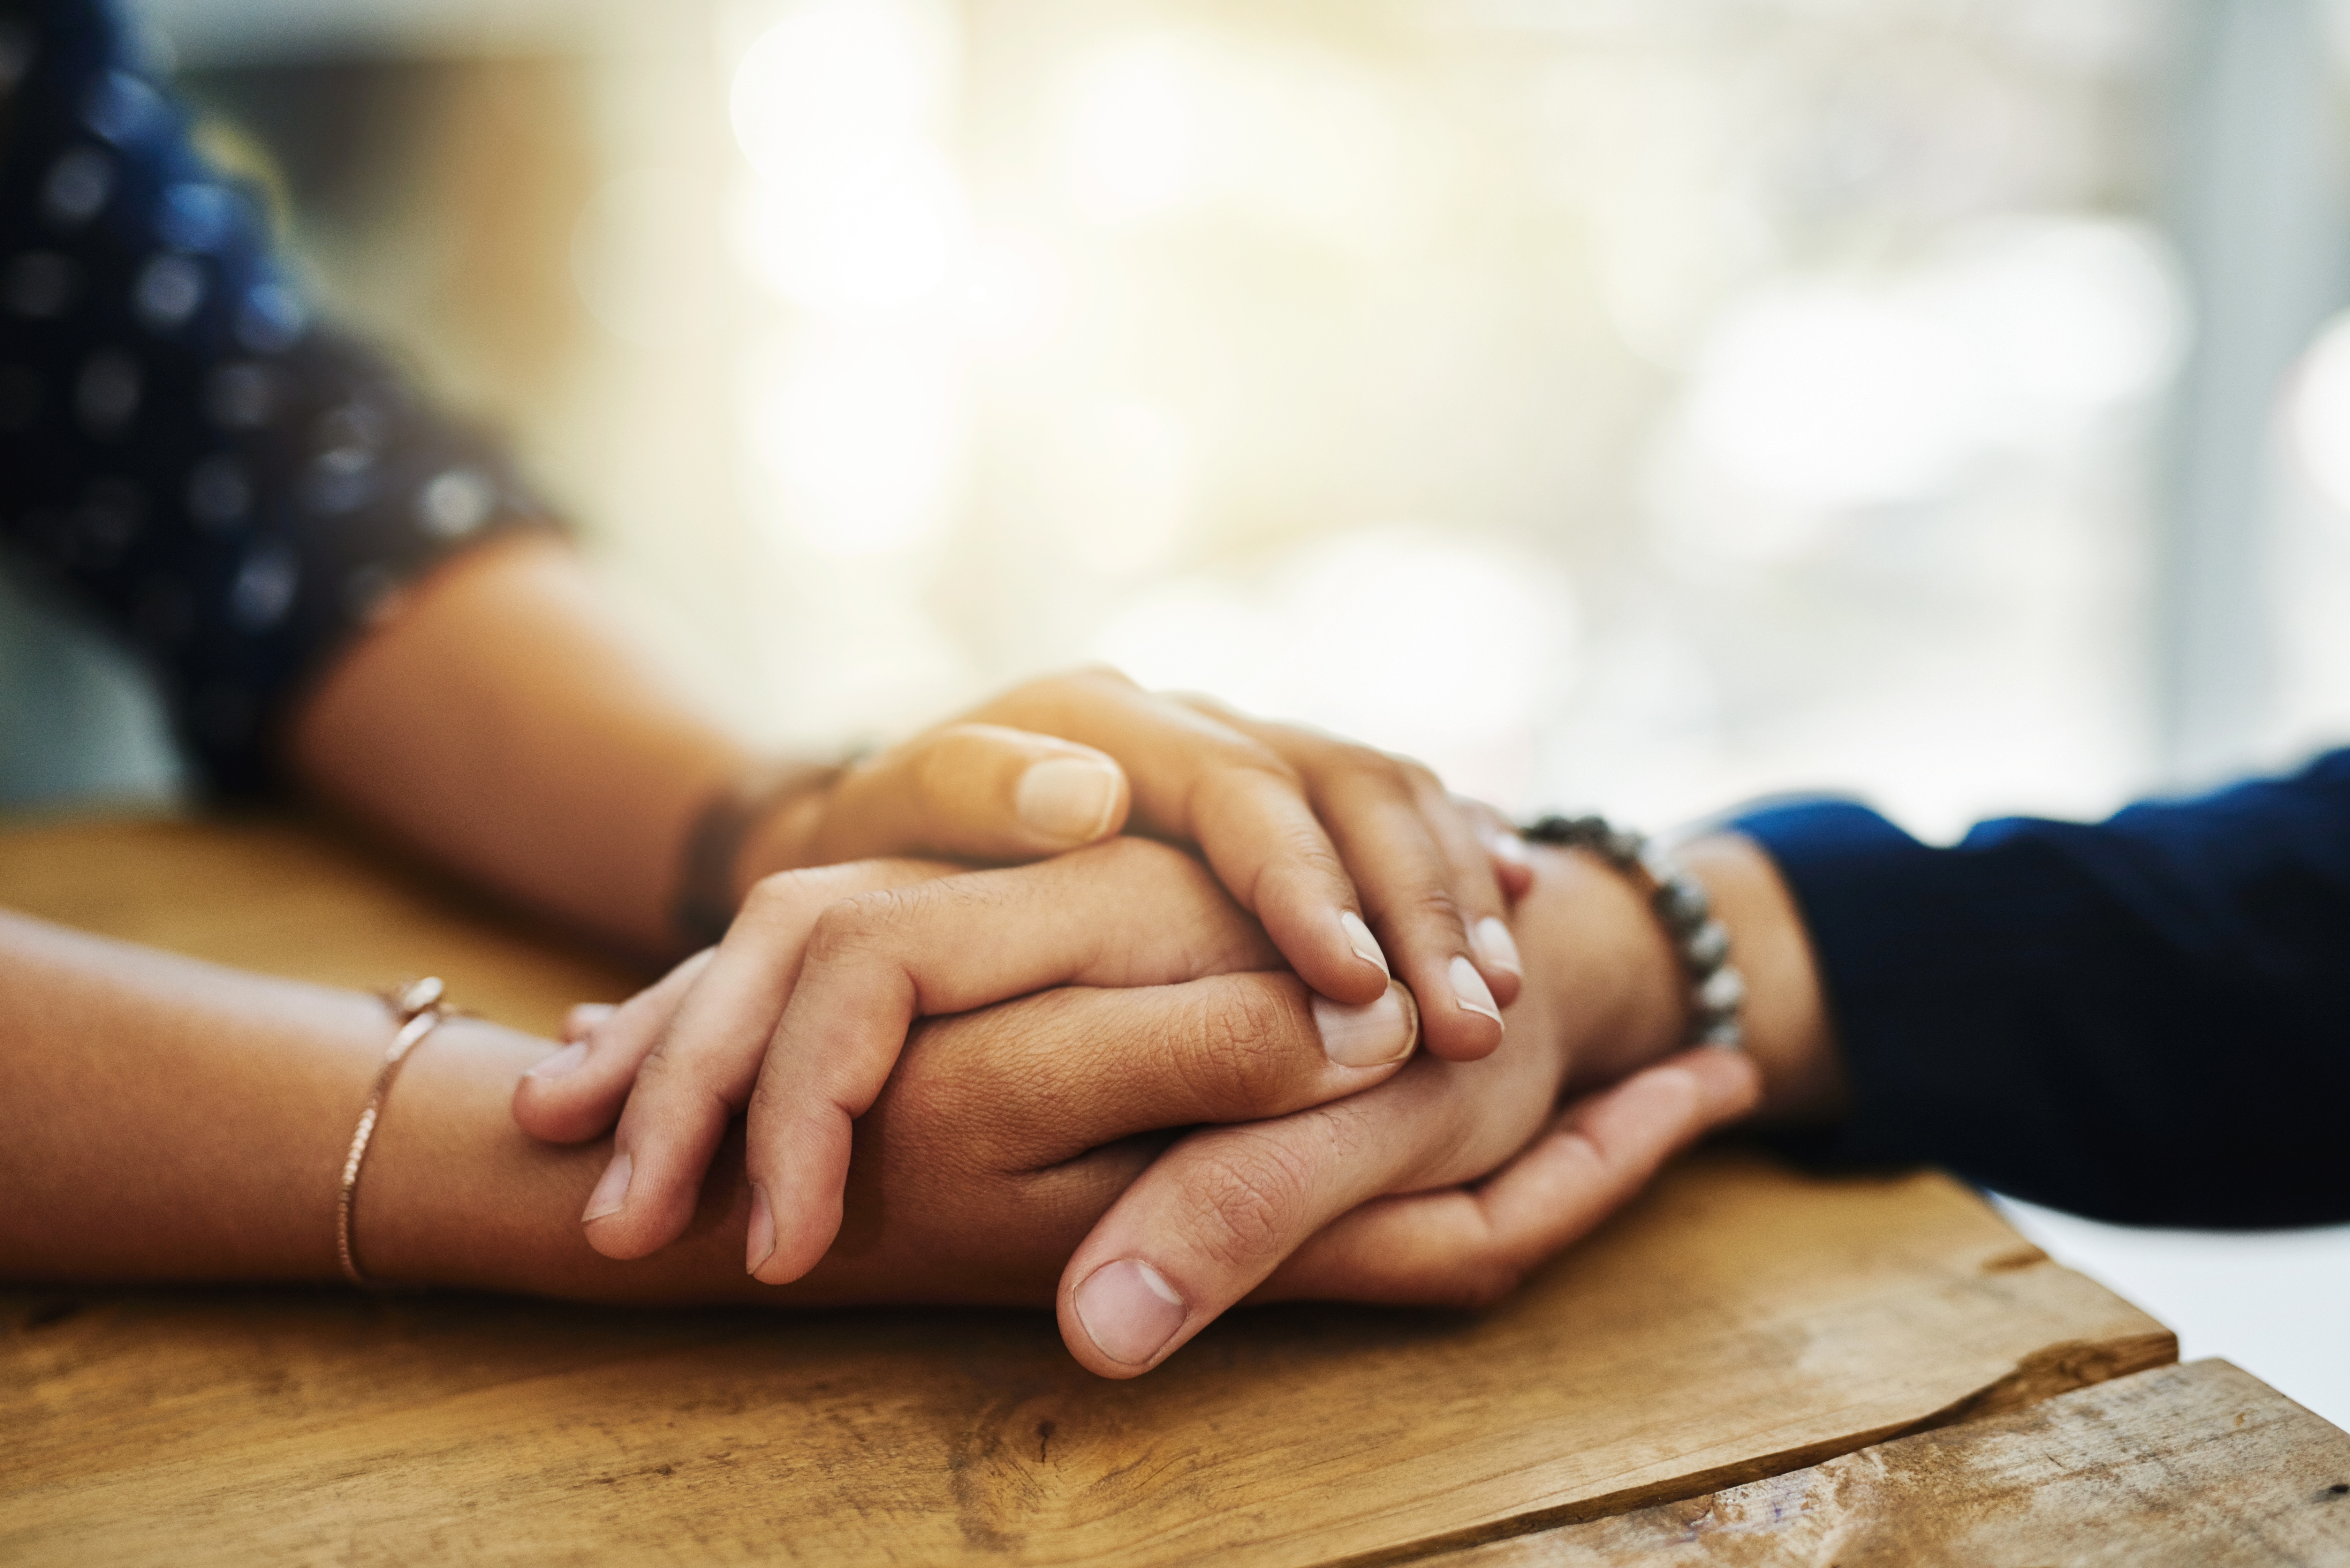 Friends holding hands | Source: Shutterstock